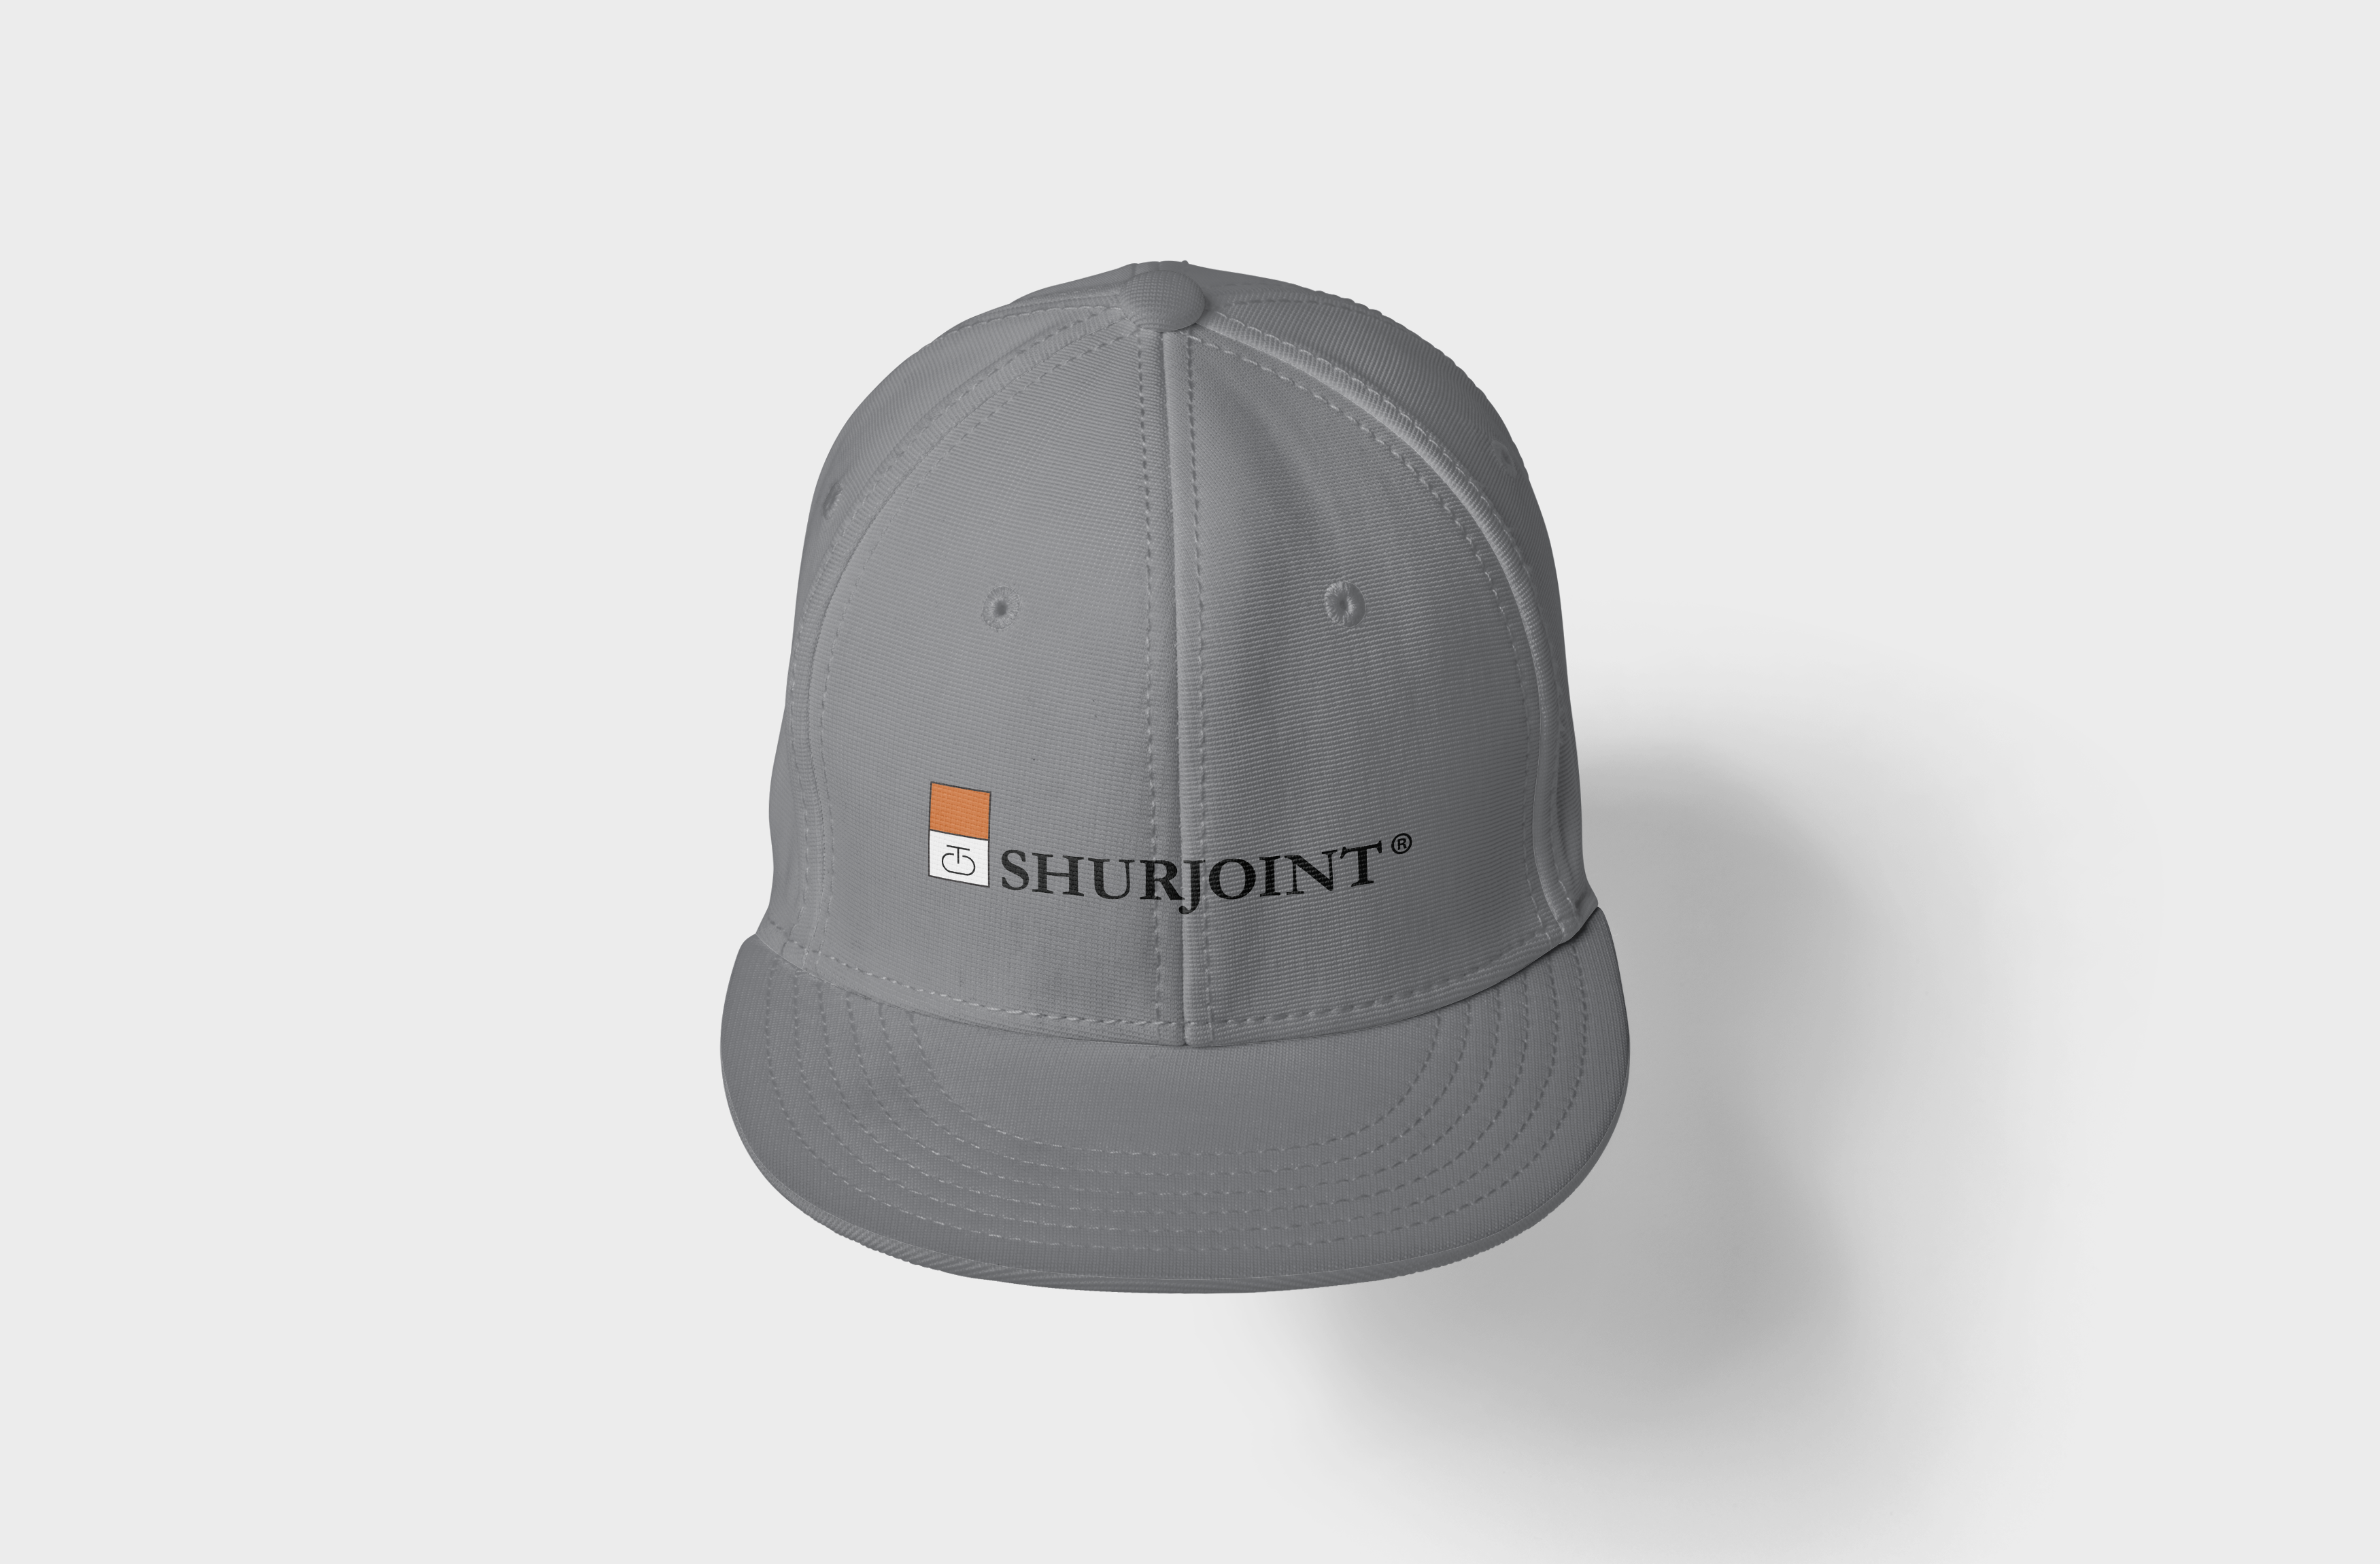 Hat Mockup for Shurjoint